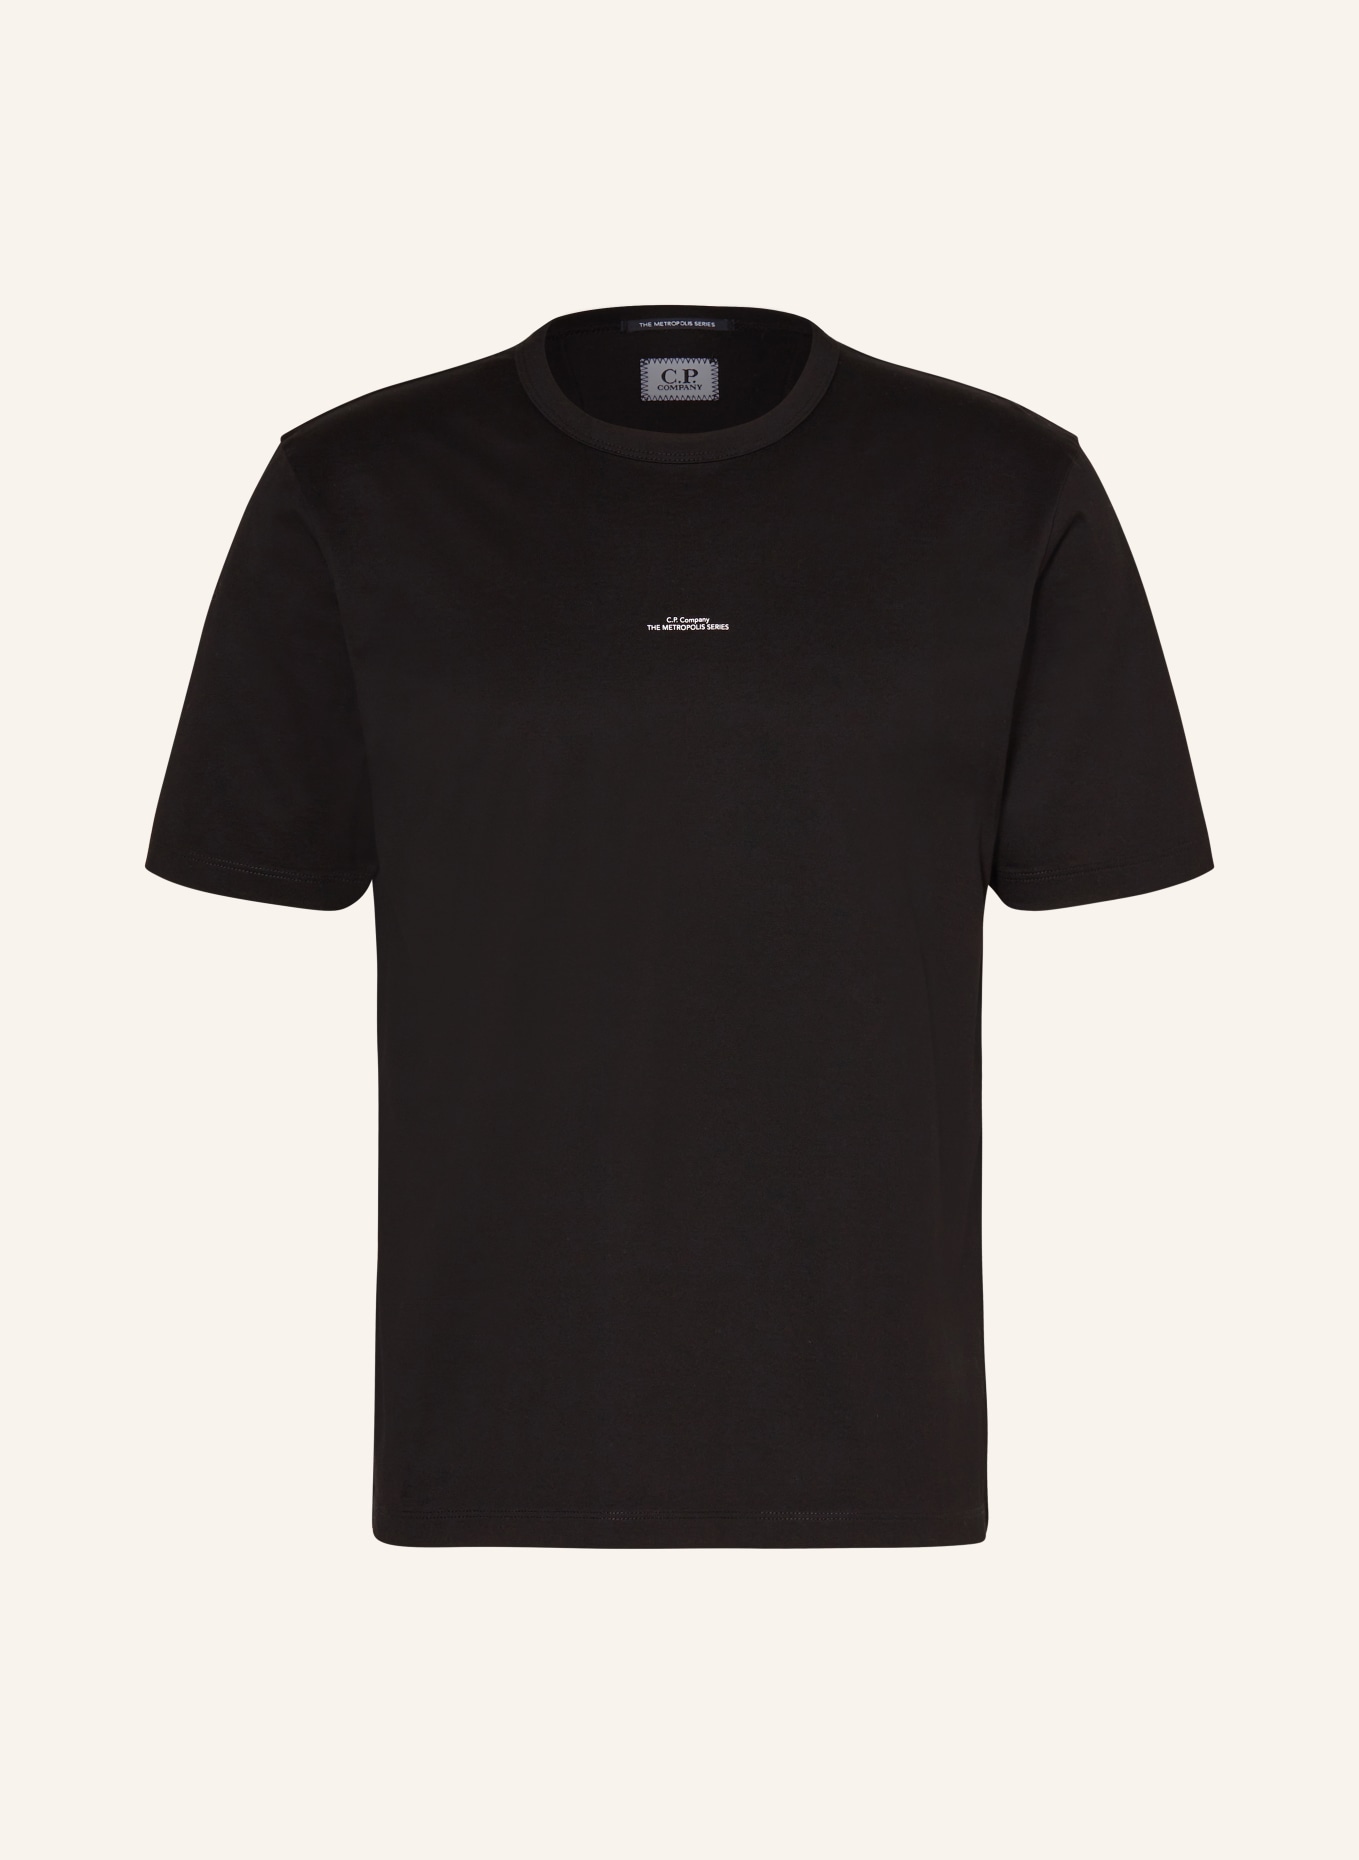 C.P. COMPANY T-shirt, Color: BLACK (Image 1)